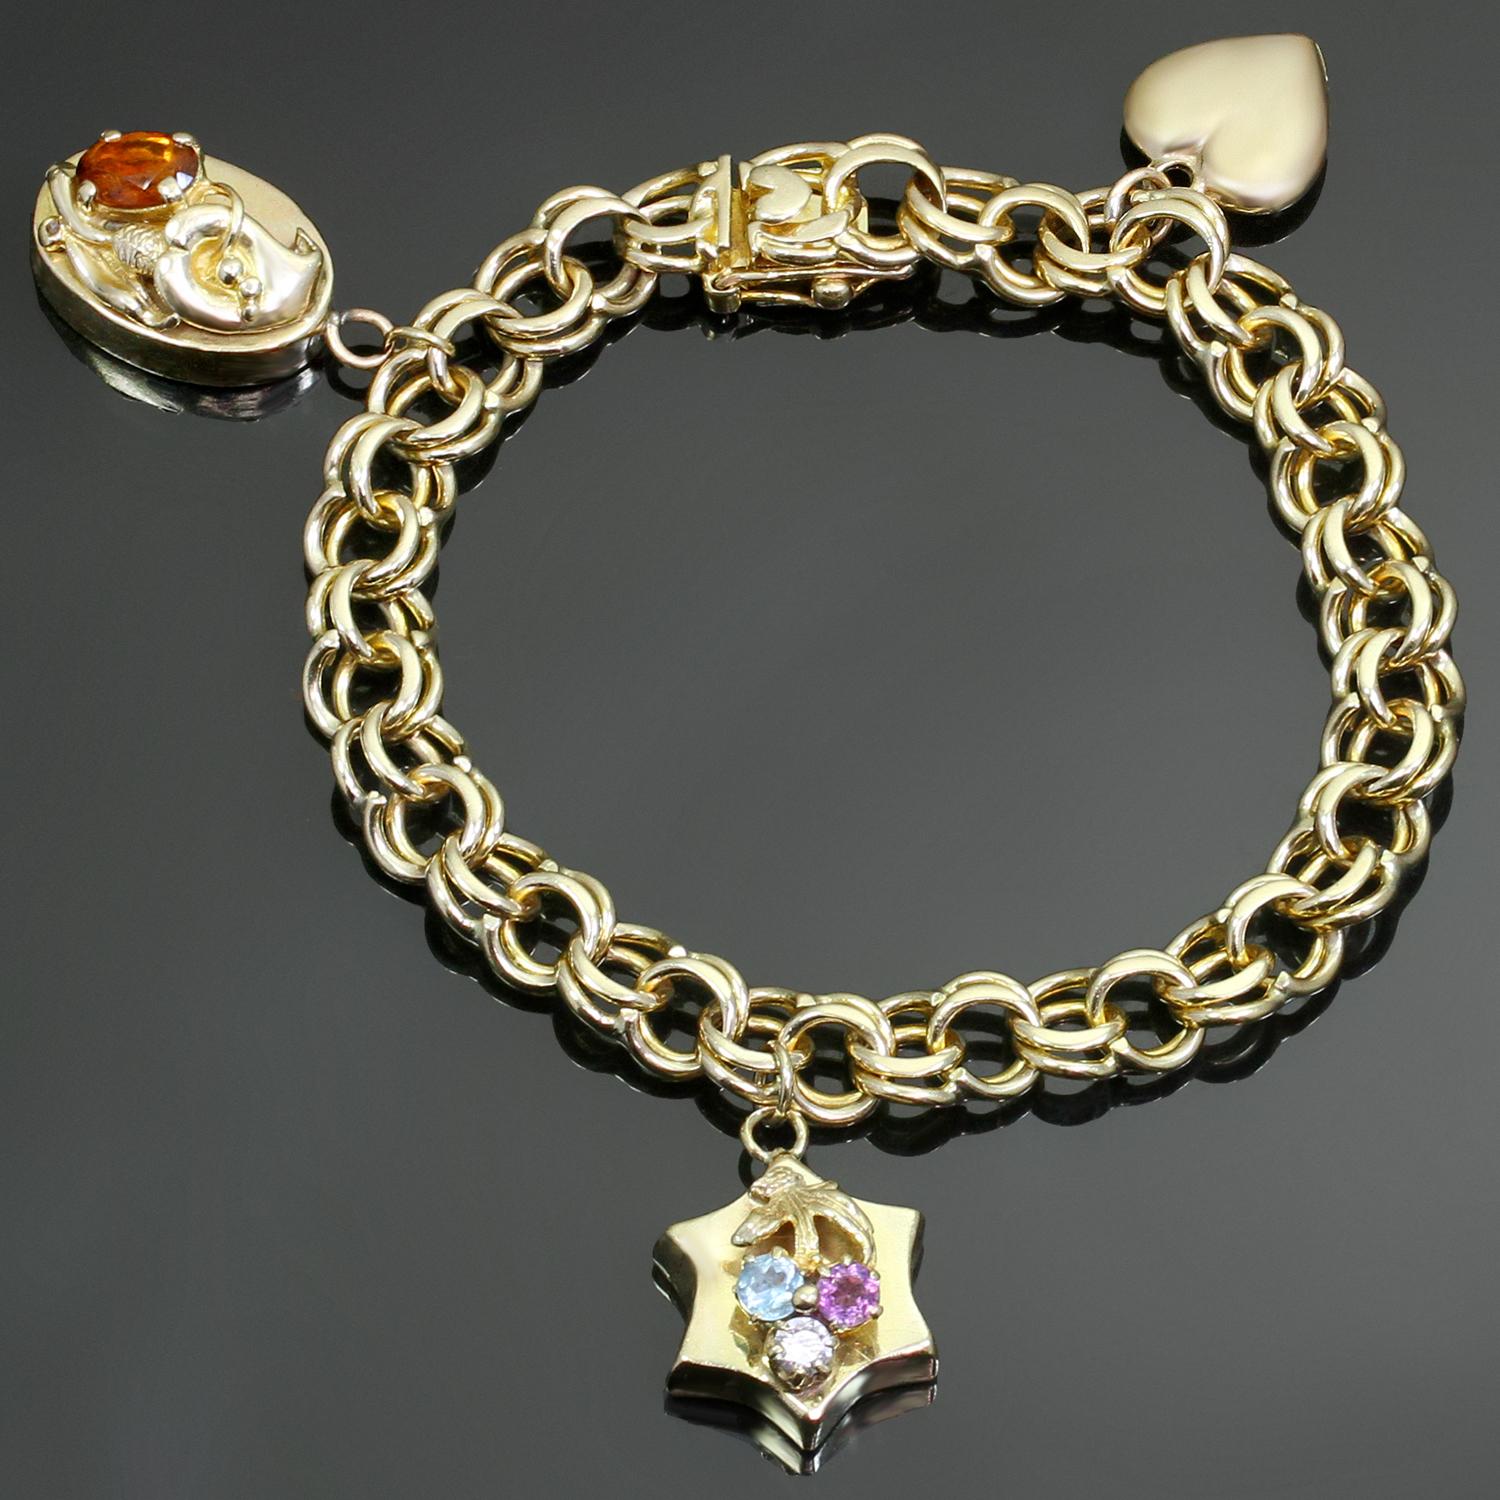 Ce bracelet classique à maillons vintage est fabriqué en or jaune 14 carats et comporte 3 charmes - un charme en forme de cœur (avec quelques bosses et rayures), un charme en forme d'étoile serti de 3 pierres précieuses à facettes et un charme ovale